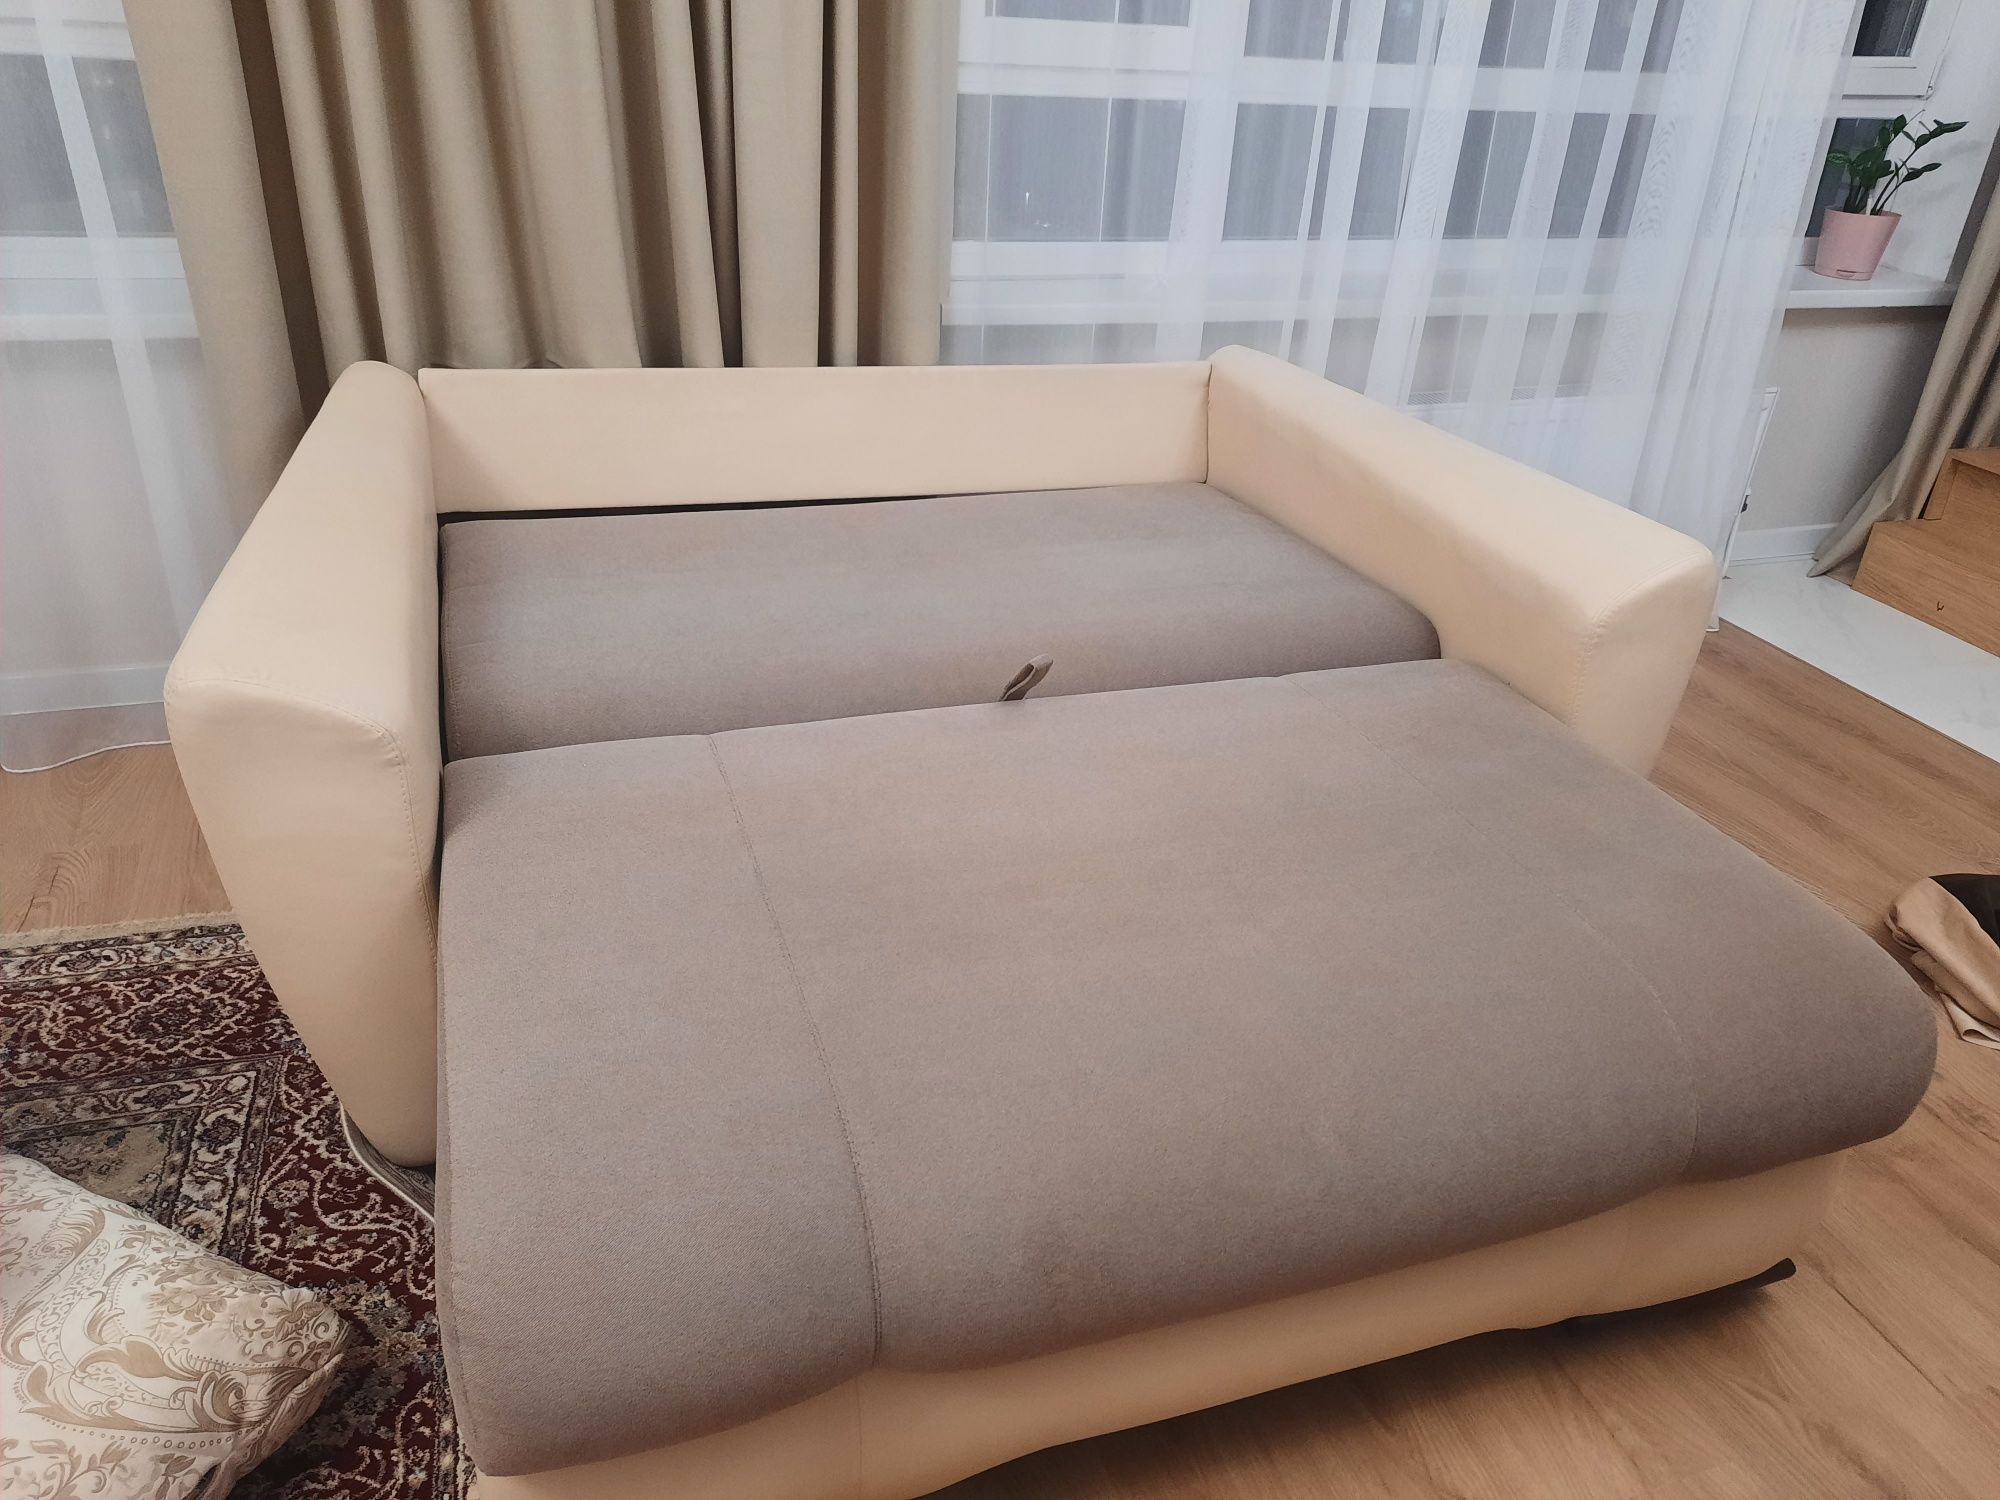 НЕДОРОГО в связи с переездом Продам диван